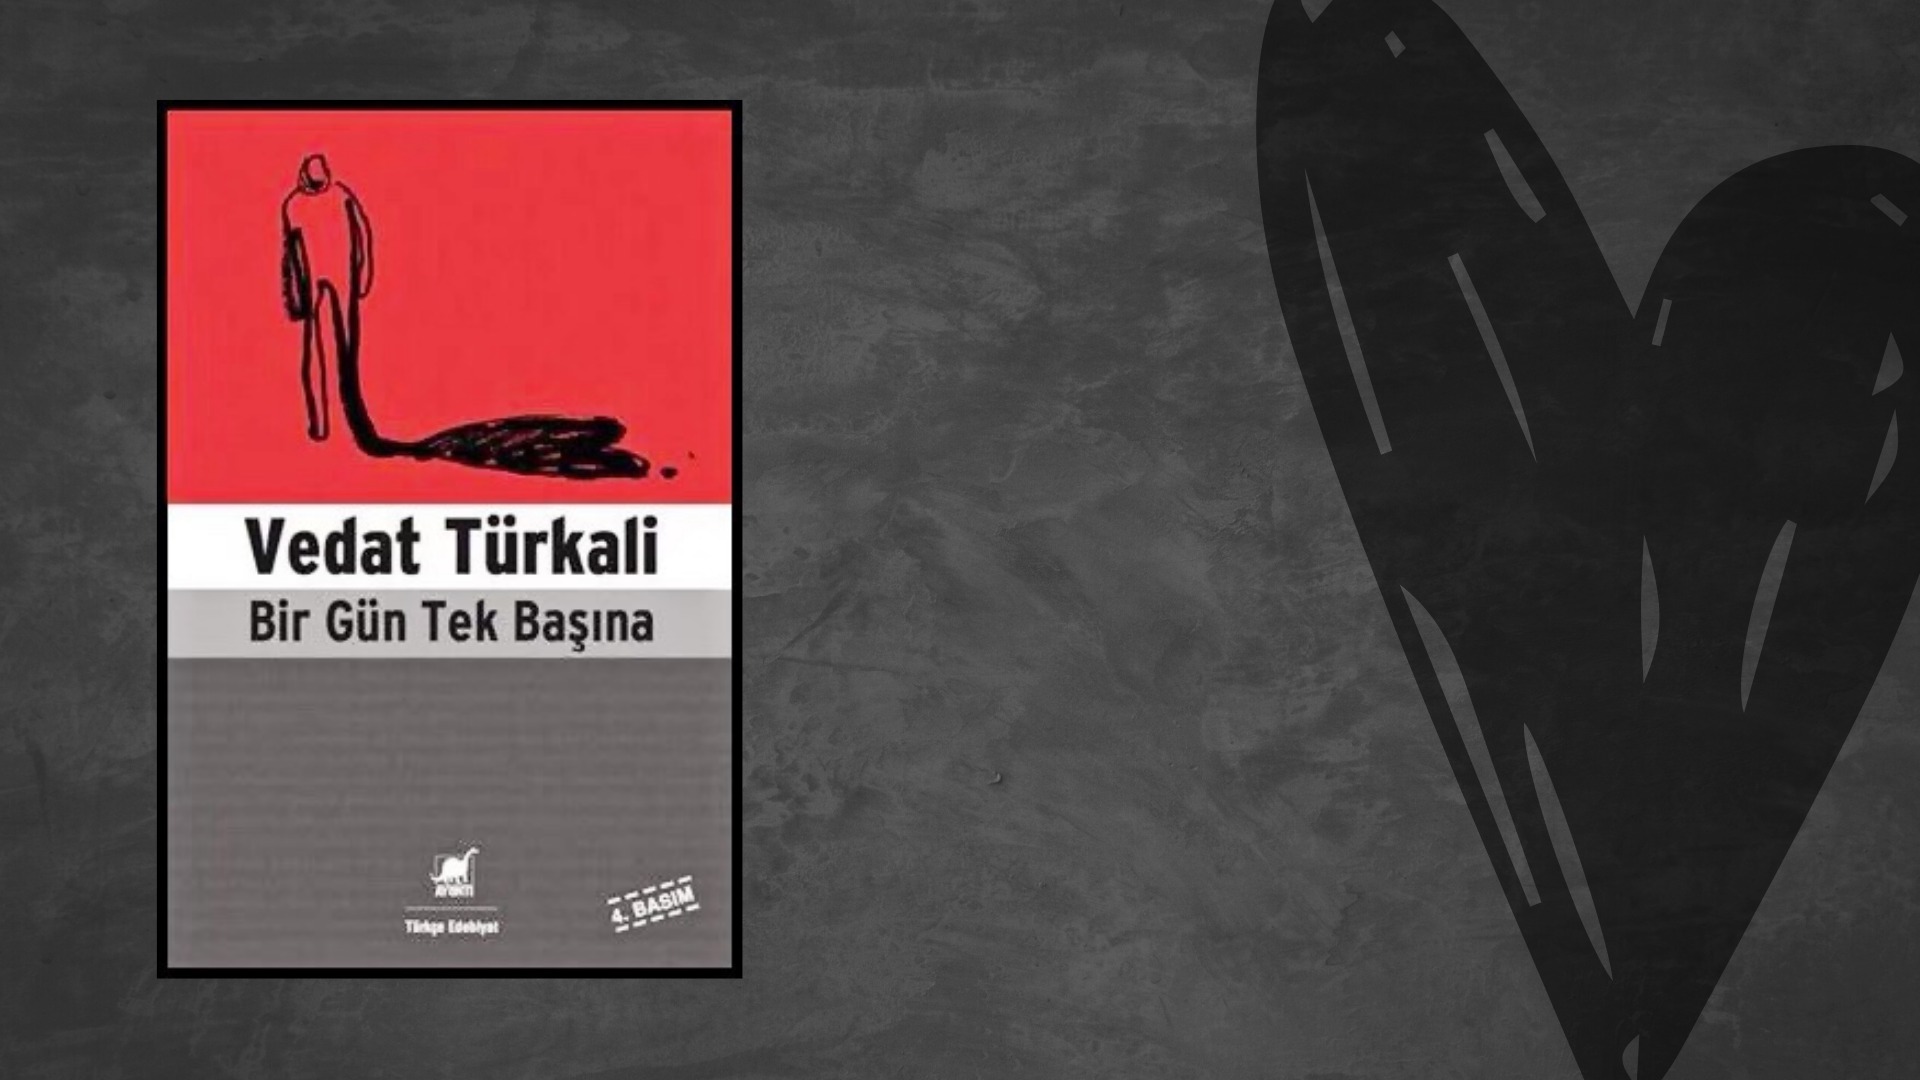 Kitap: Bir Gün Tek Başına | Yazar: Vedat Türkali | Yorumlayan: Hülya Erarslan